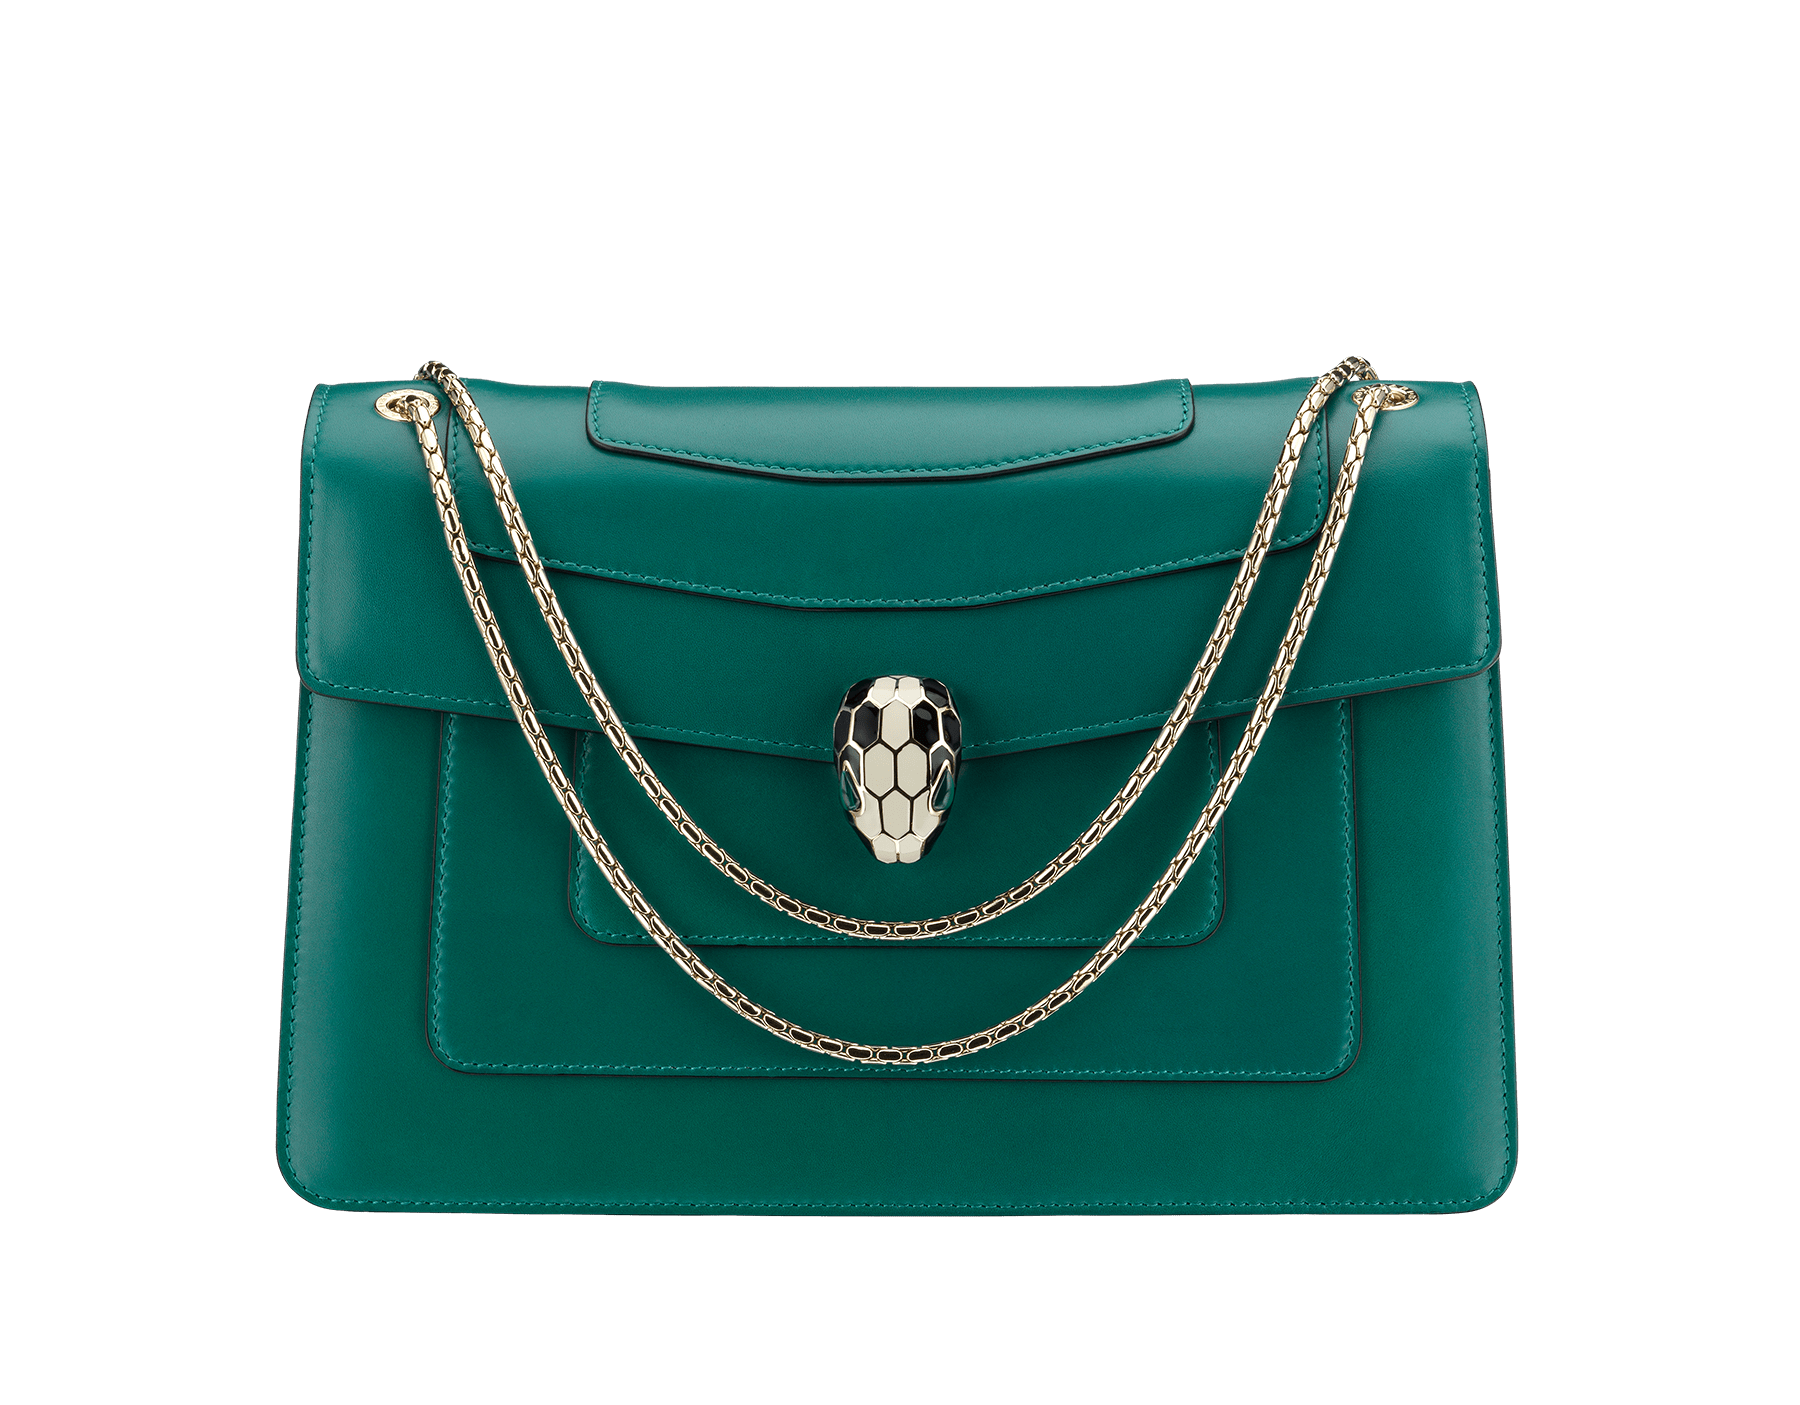 bulgari new handbag collection